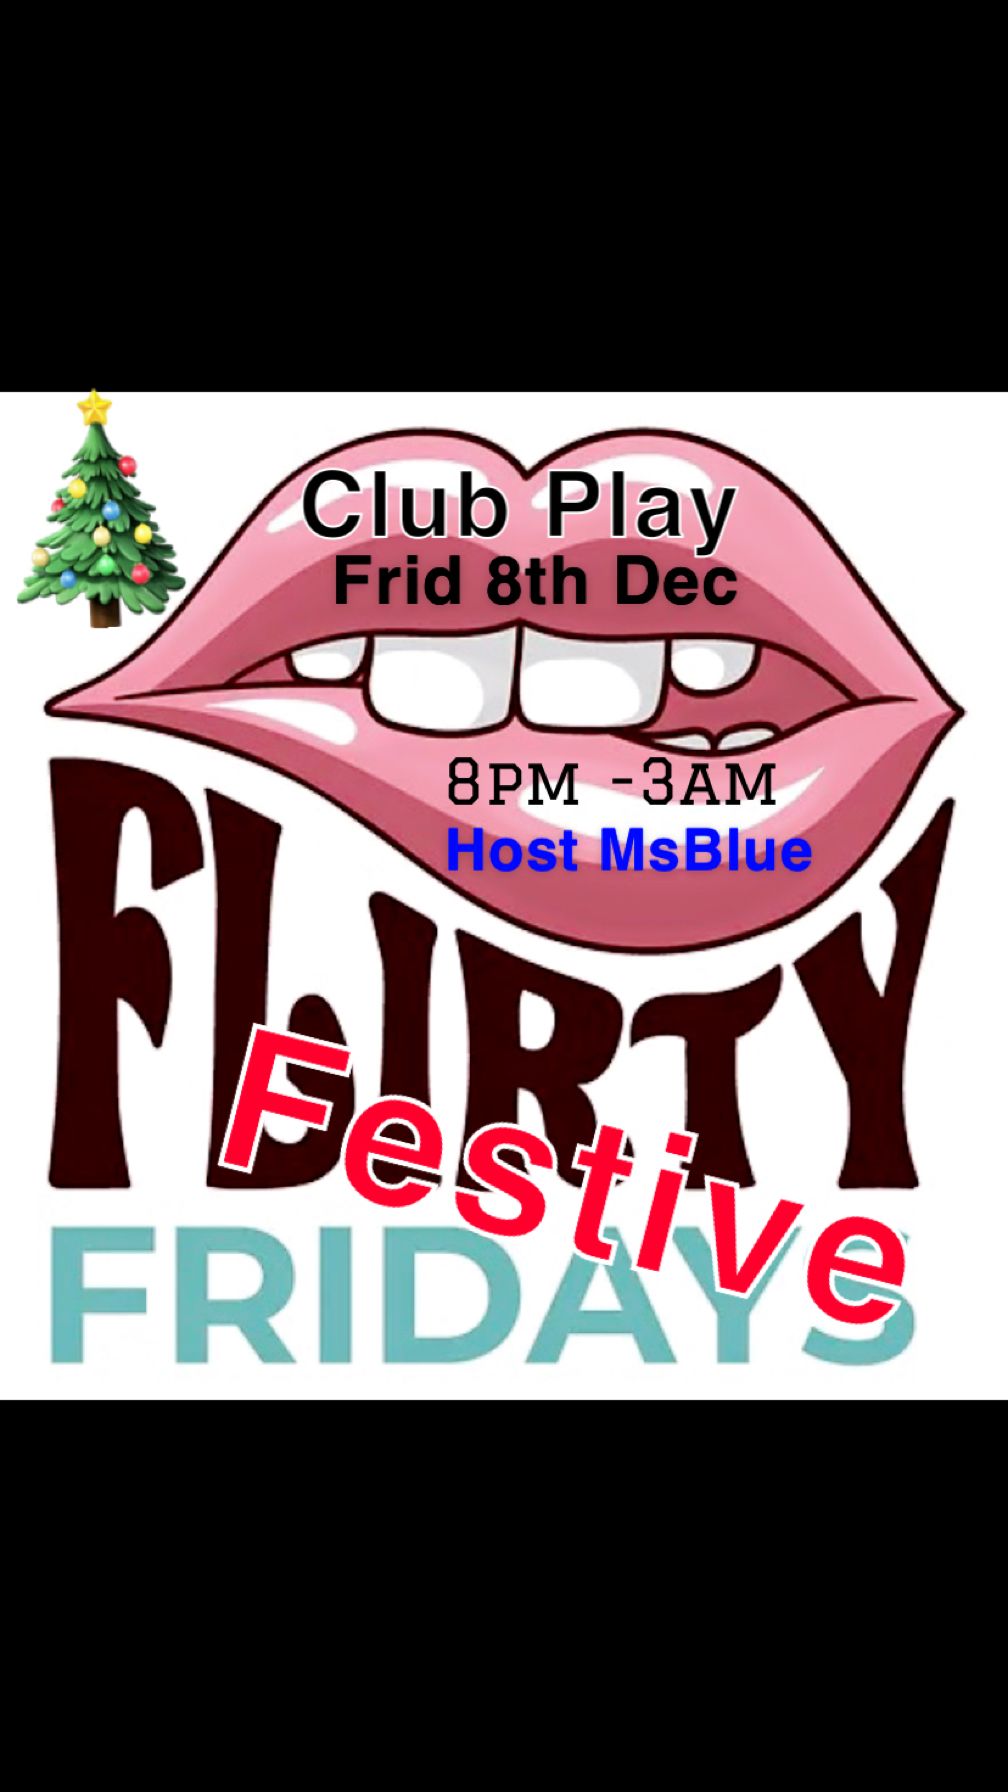 *FESTIVE FLIRTY FRIDAY*- Frid 8th Dec- 8pm-3am @ CLUB PLAY